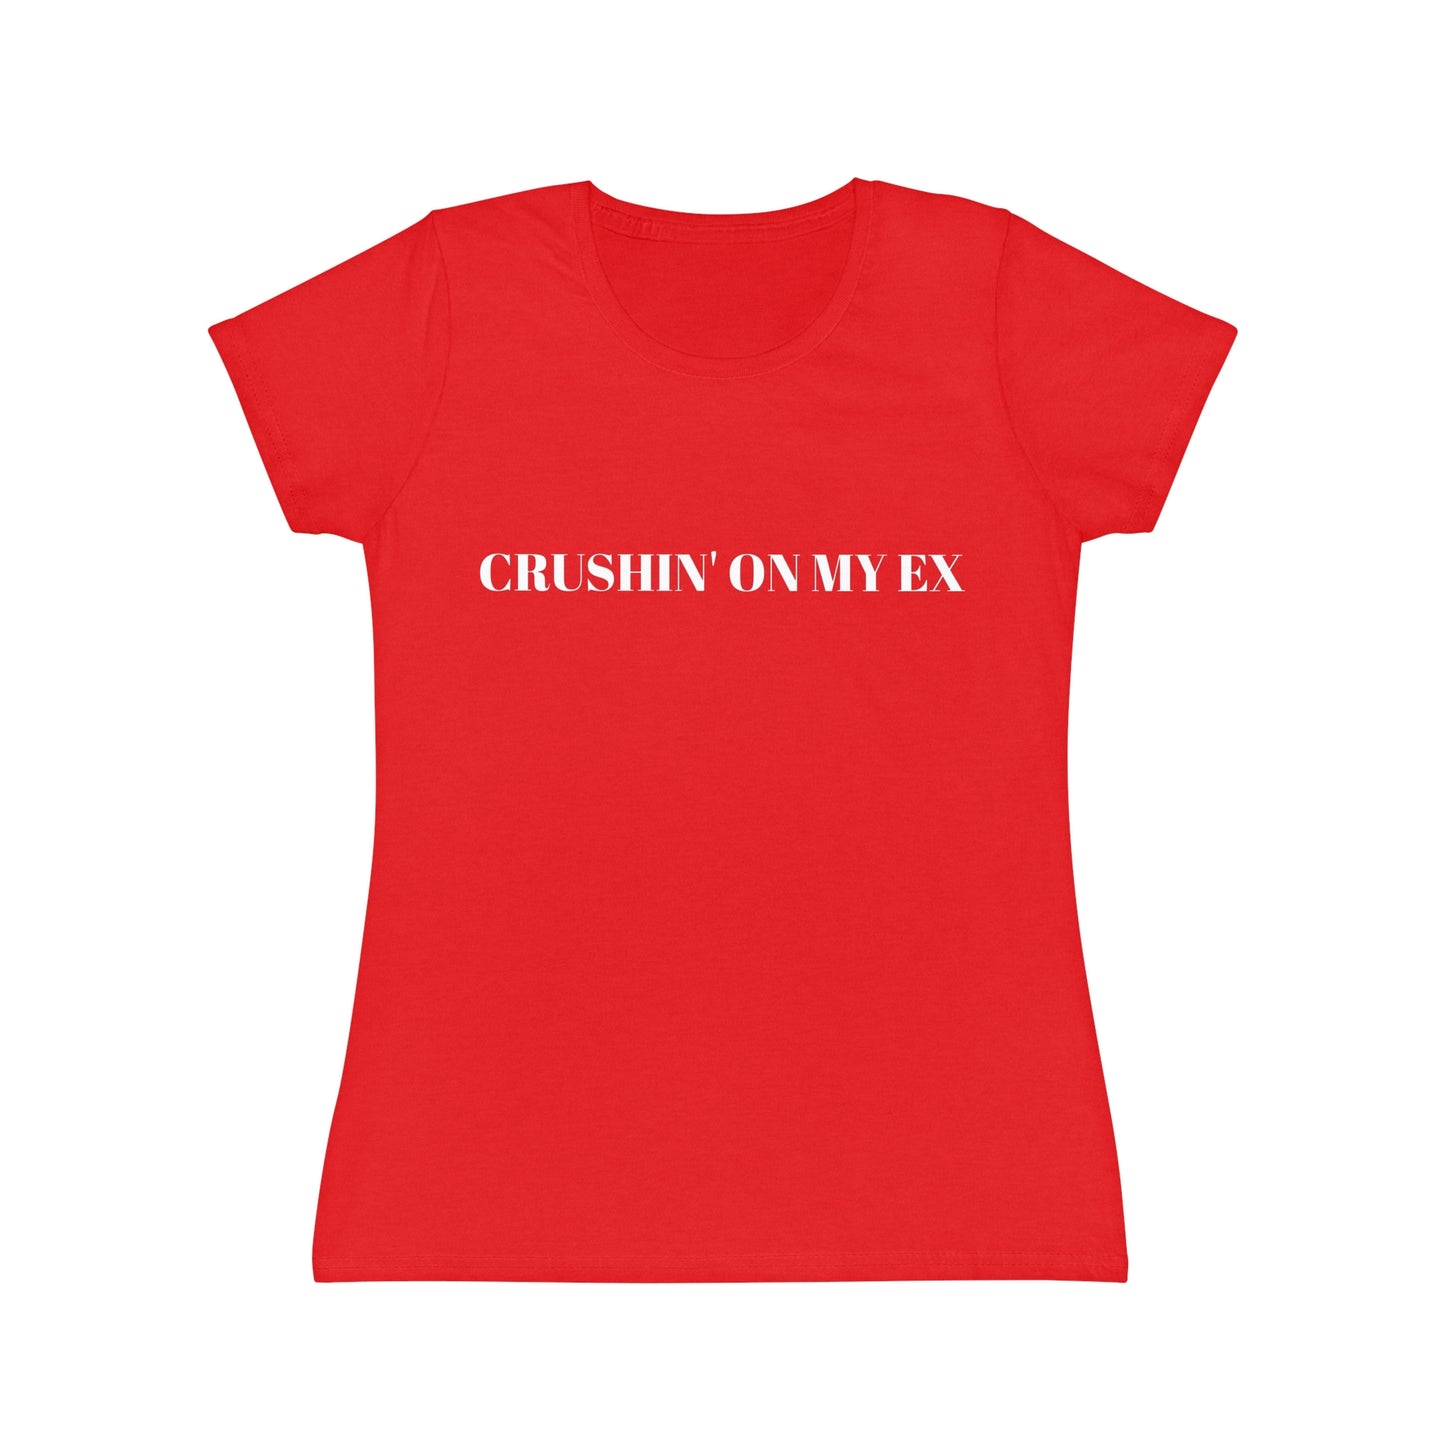 'CRUSHIN ON MY EX' Women's Iconic T-Shirt